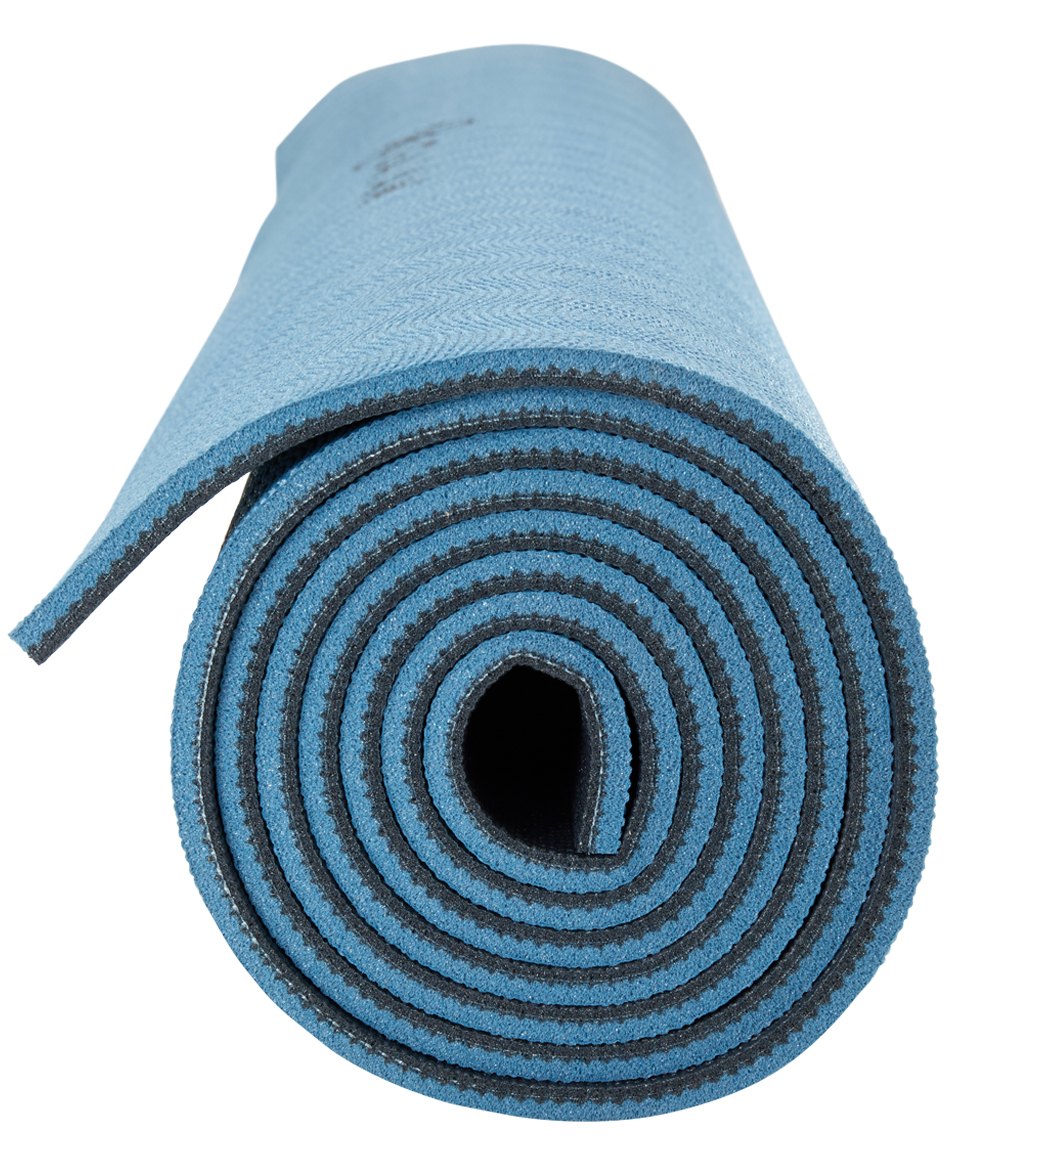 Premium Insta-Grip Yoga Mat (6mm)